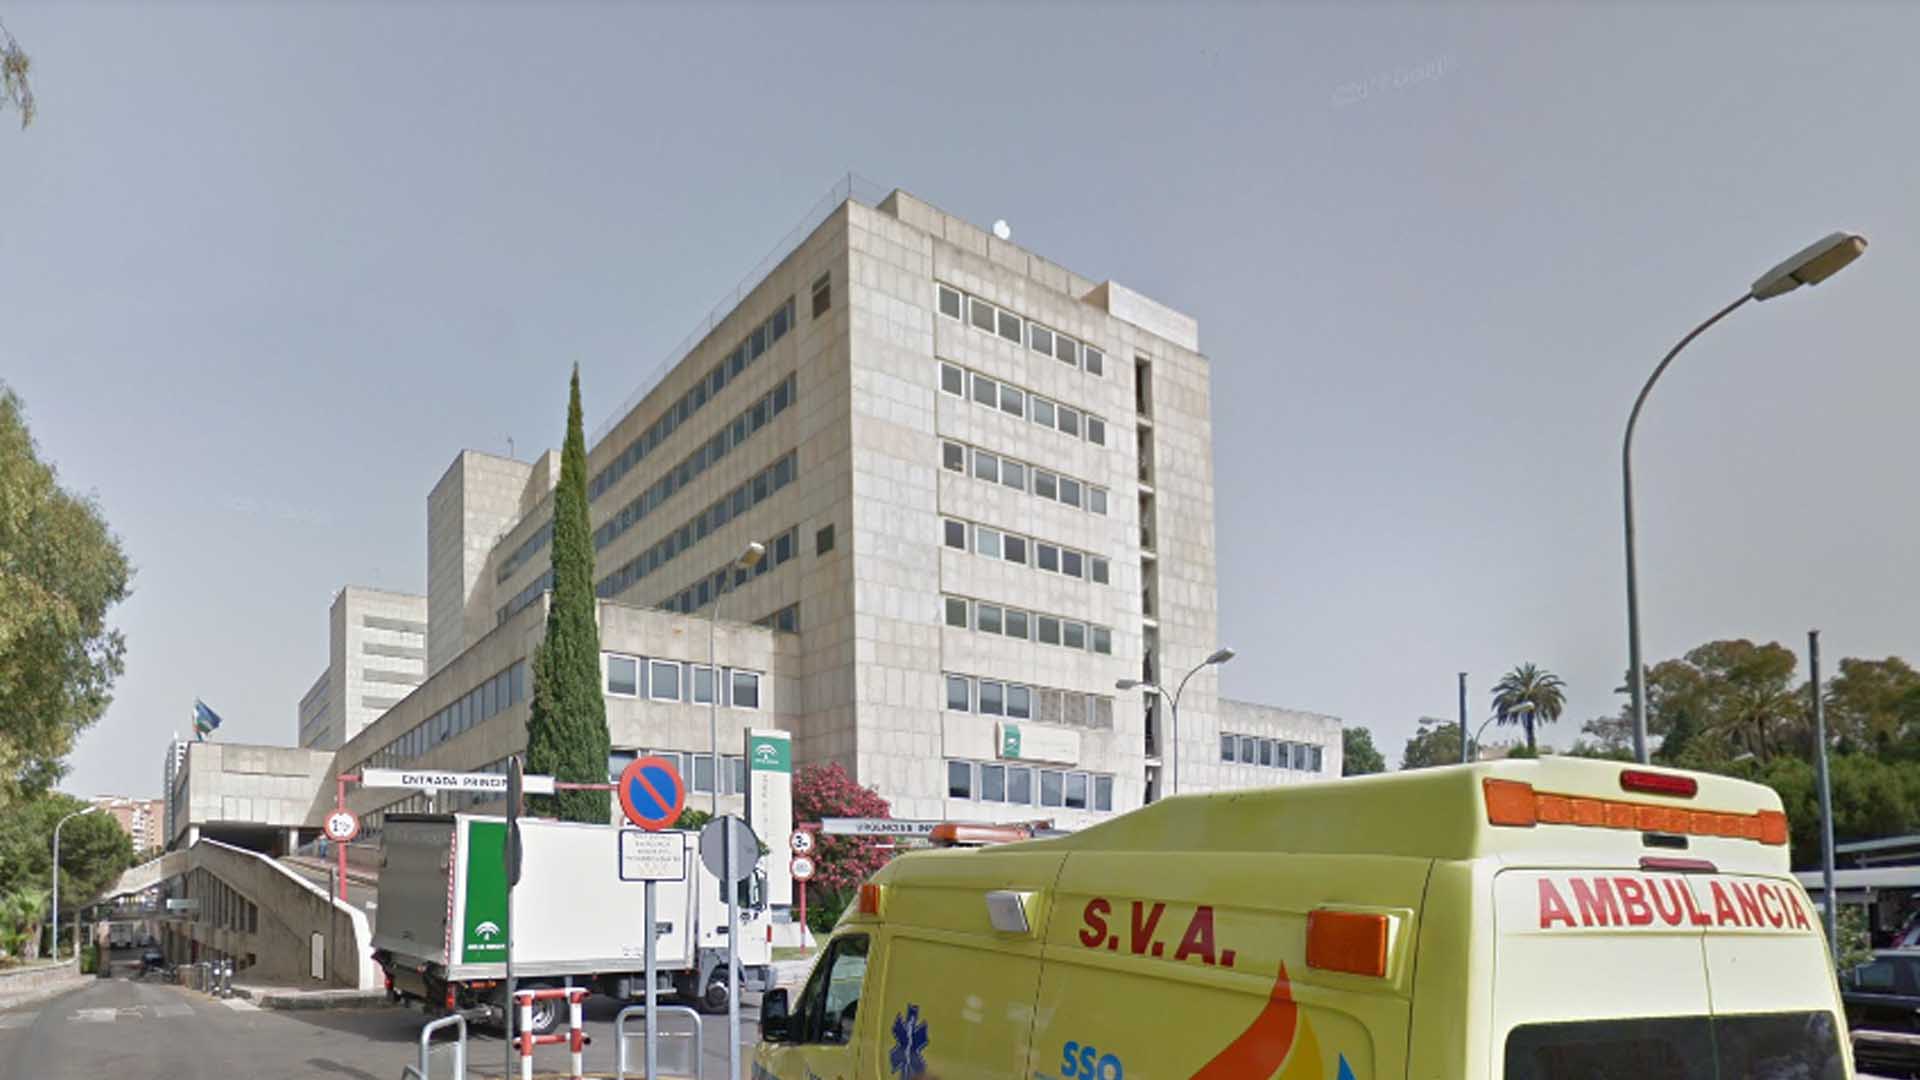 Condenado el Servicio Andaluz de Salud a pagar 1,2 millones por una negligencia médica a una niña